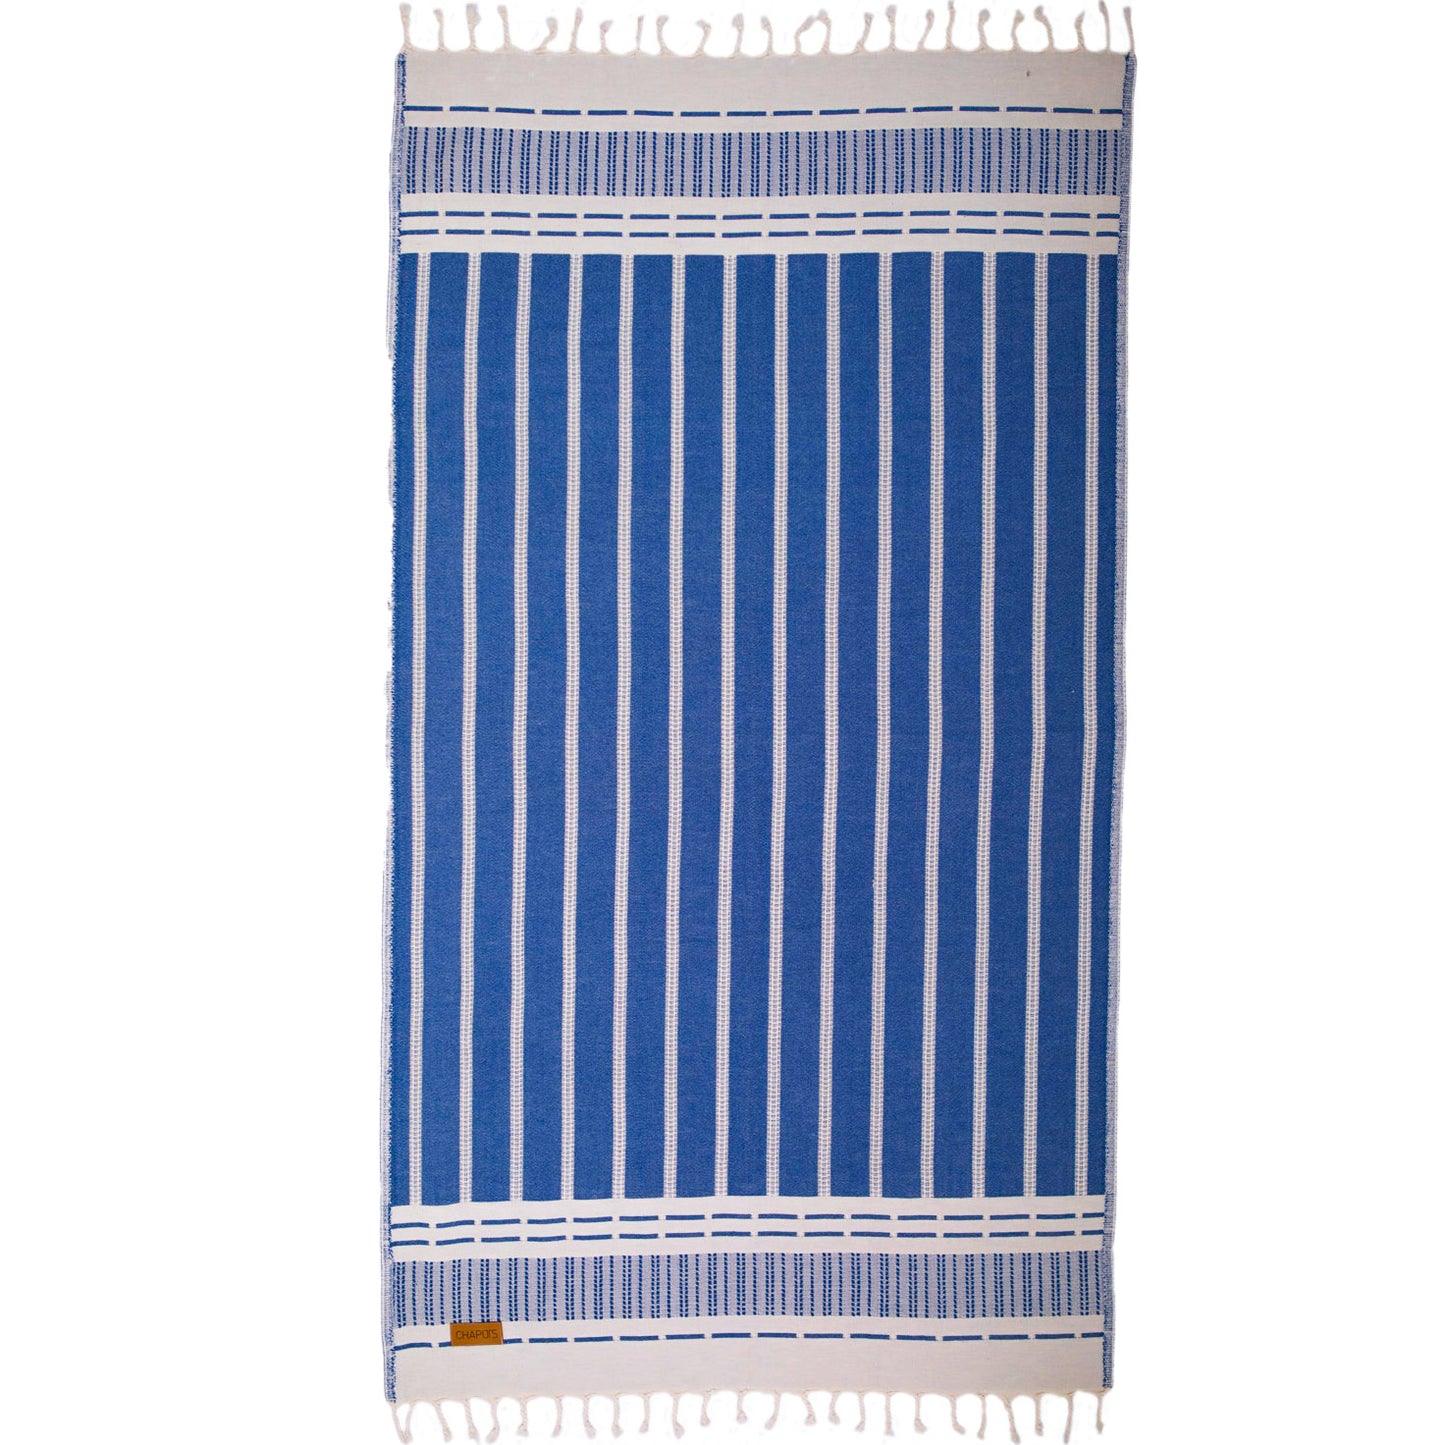 Stripe Jacquard Design Natural Cotton Turkish Towel Pestemal Indigo